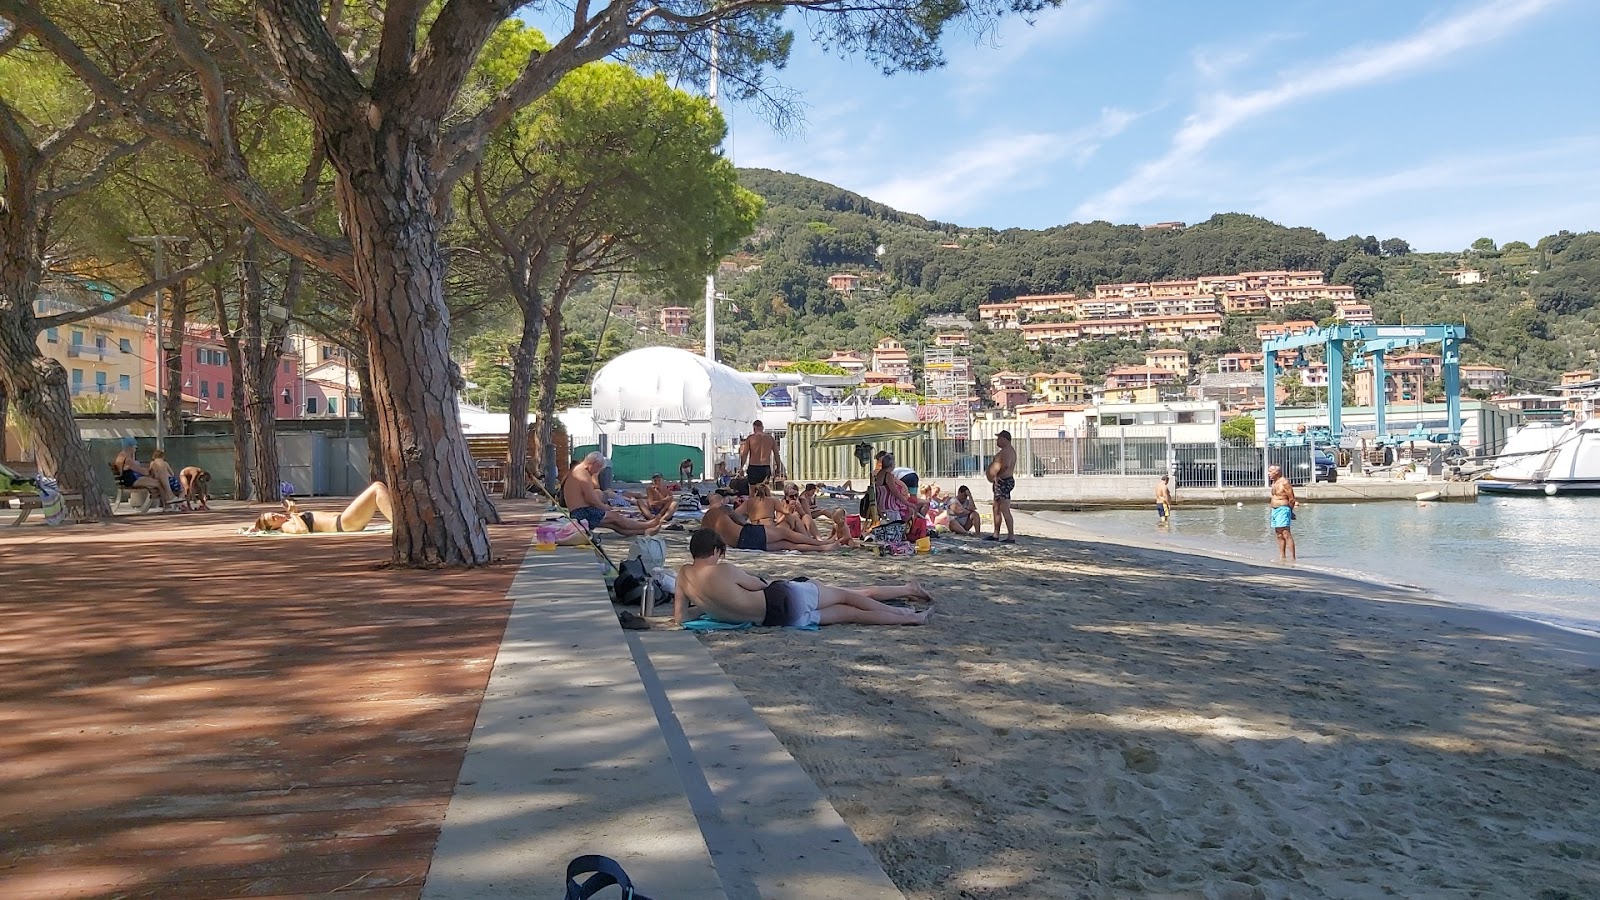 Foto av Spiaggia Giardini Pubblici med hög nivå av renlighet